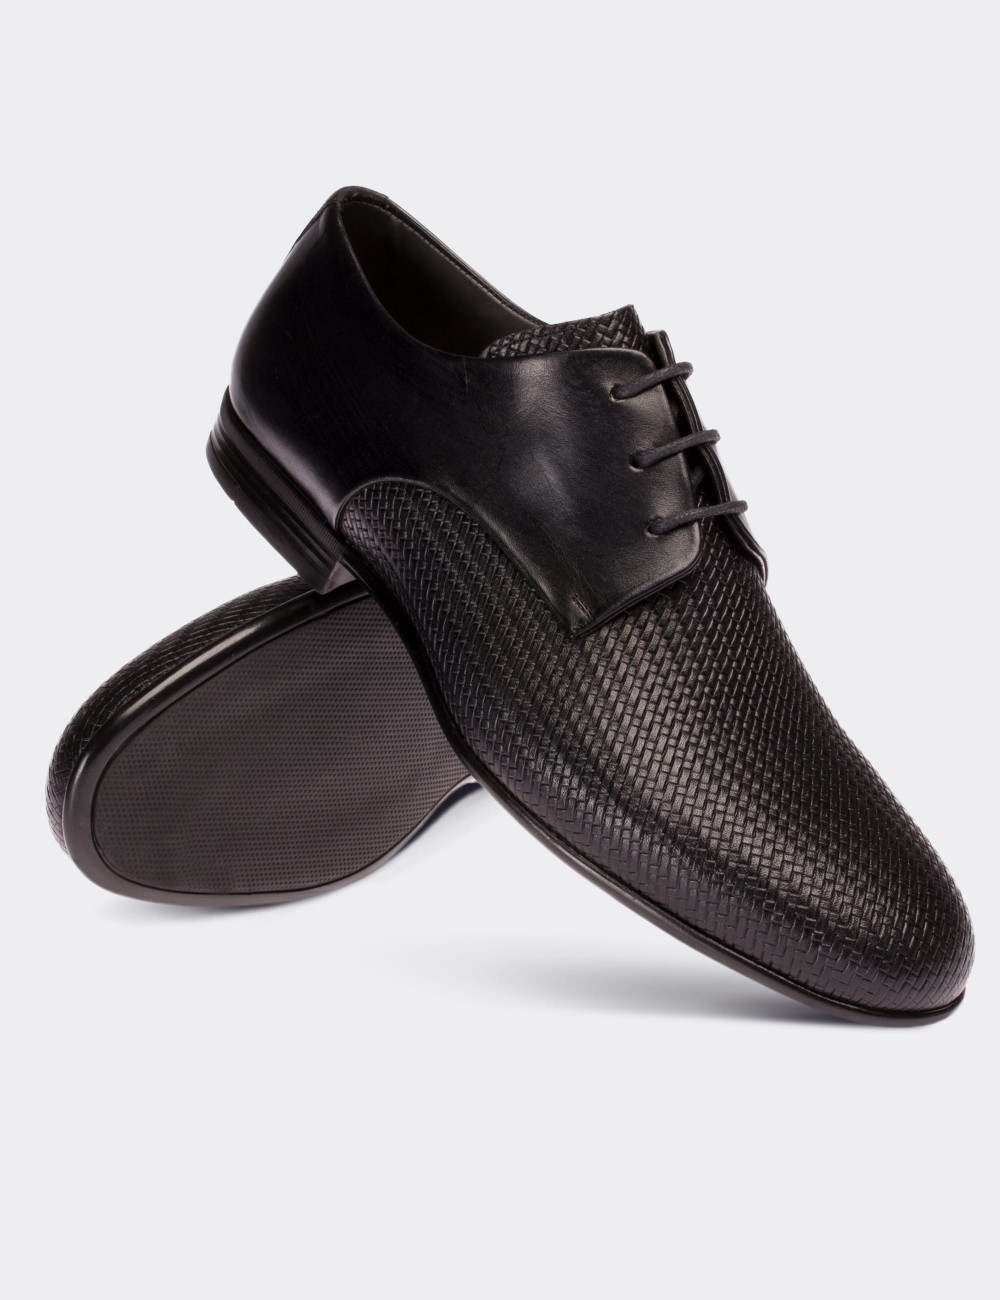 Hakiki Deri Siyah Klasik Erkek Ayakkabı - 01709MSYHC01